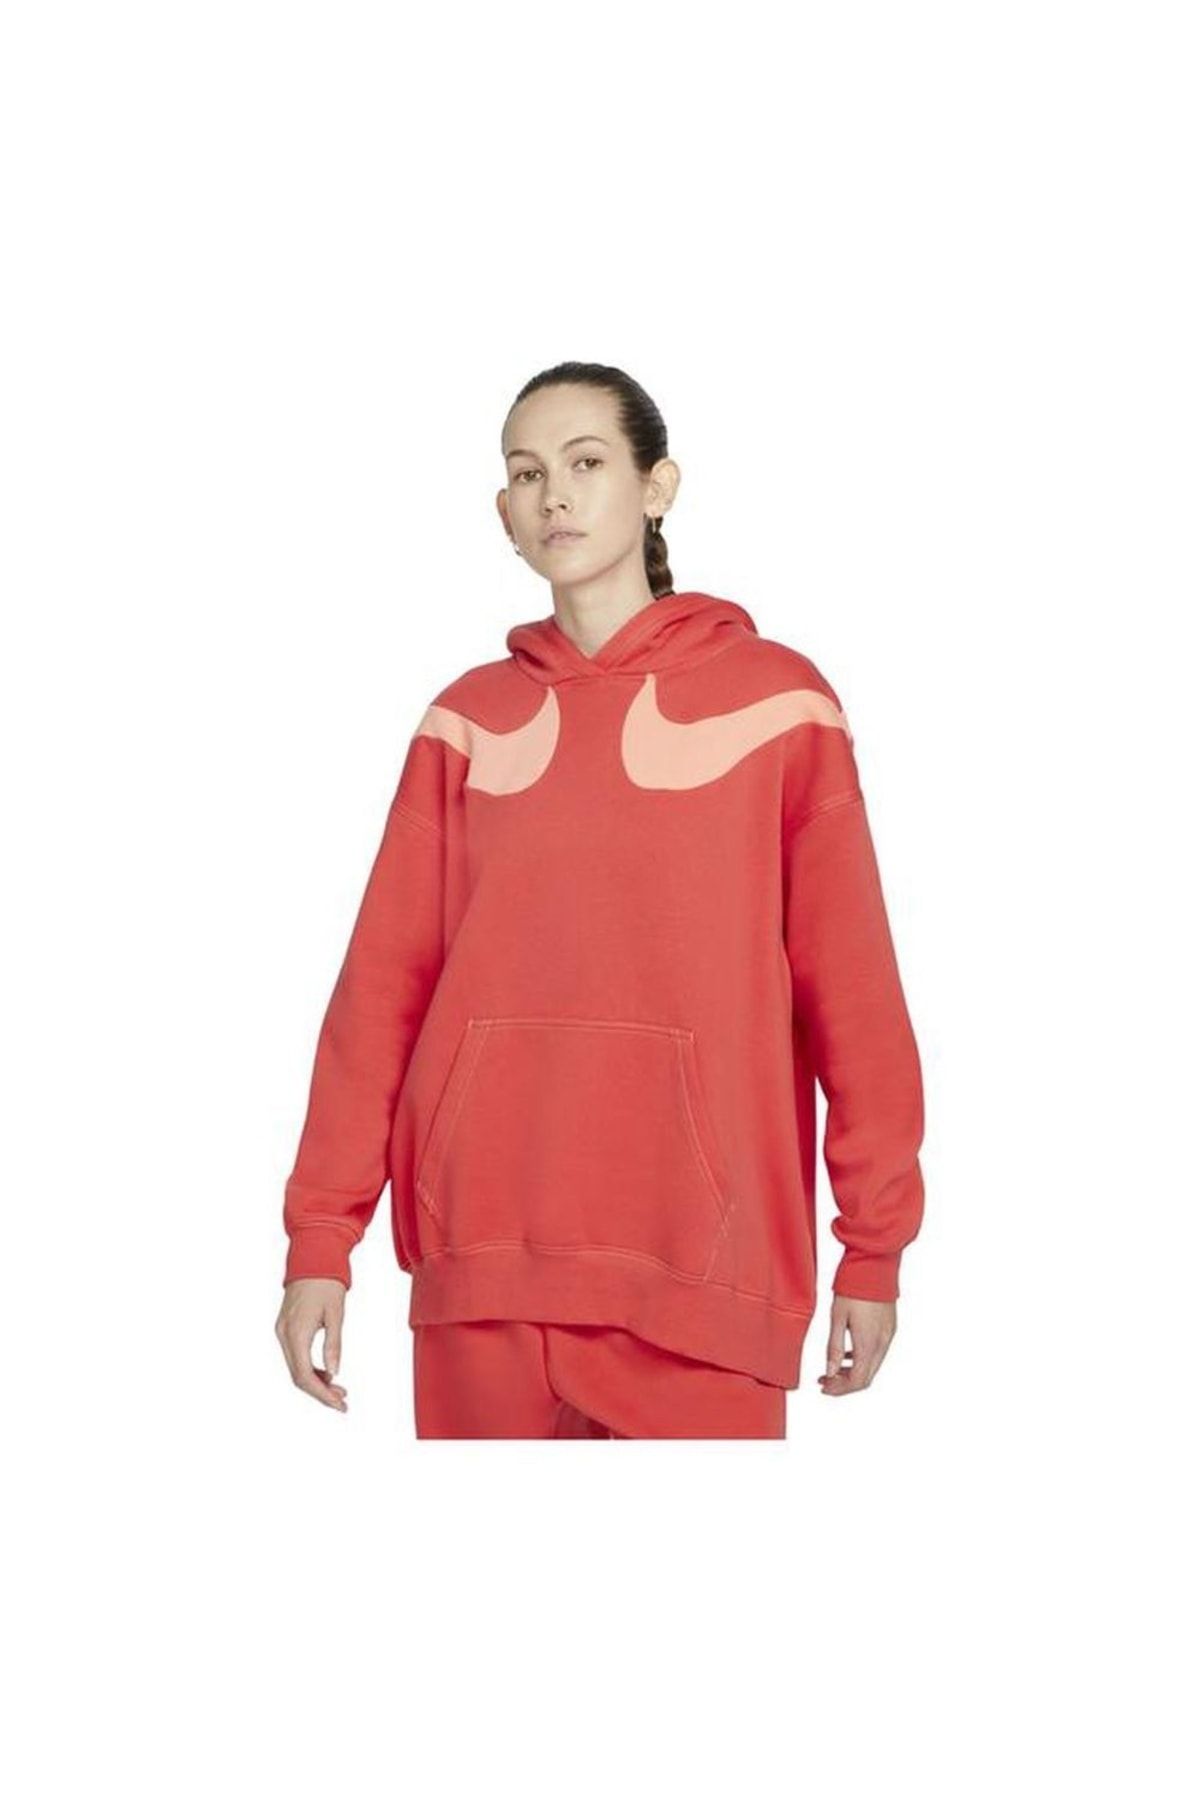 Nike Sportswear Swoosh Graphic Oversized Fleece Hoodie Sweatshirt-dd5580-605